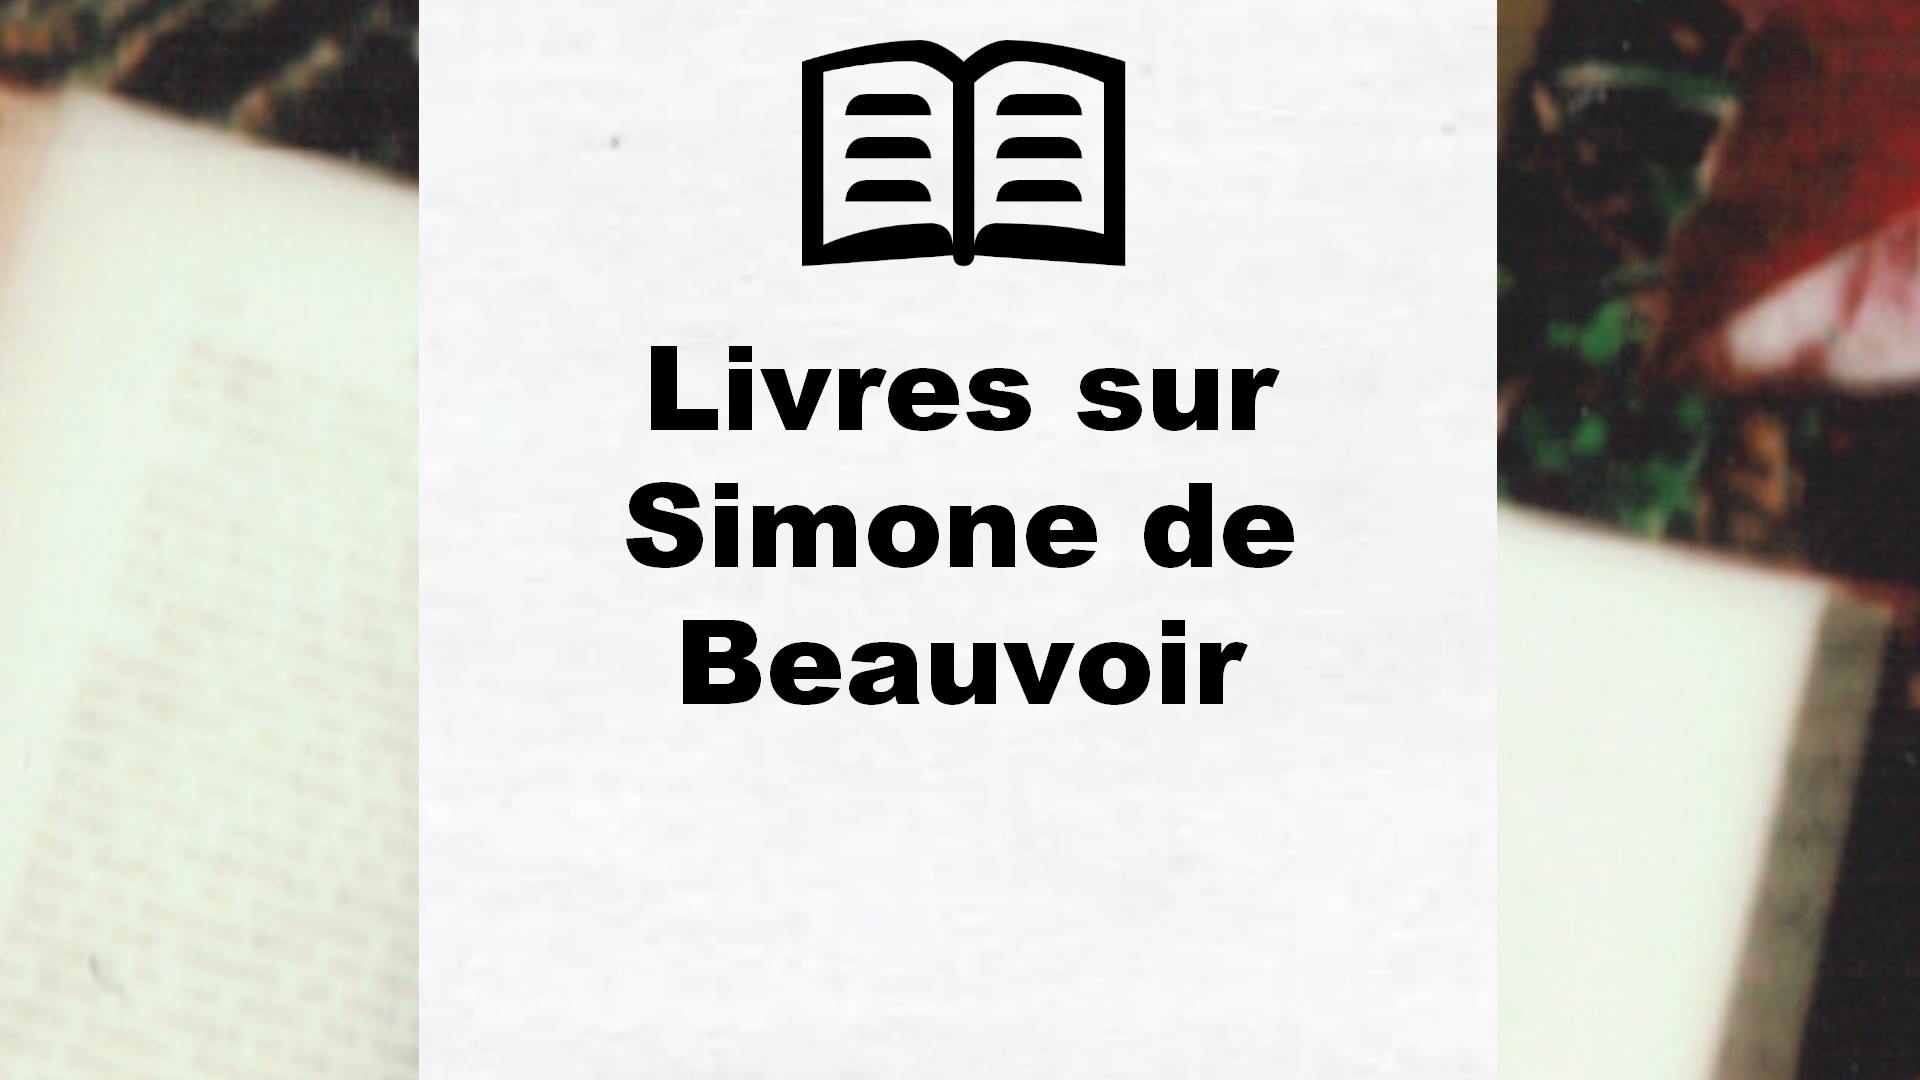 Livres sur Simone de Beauvoir